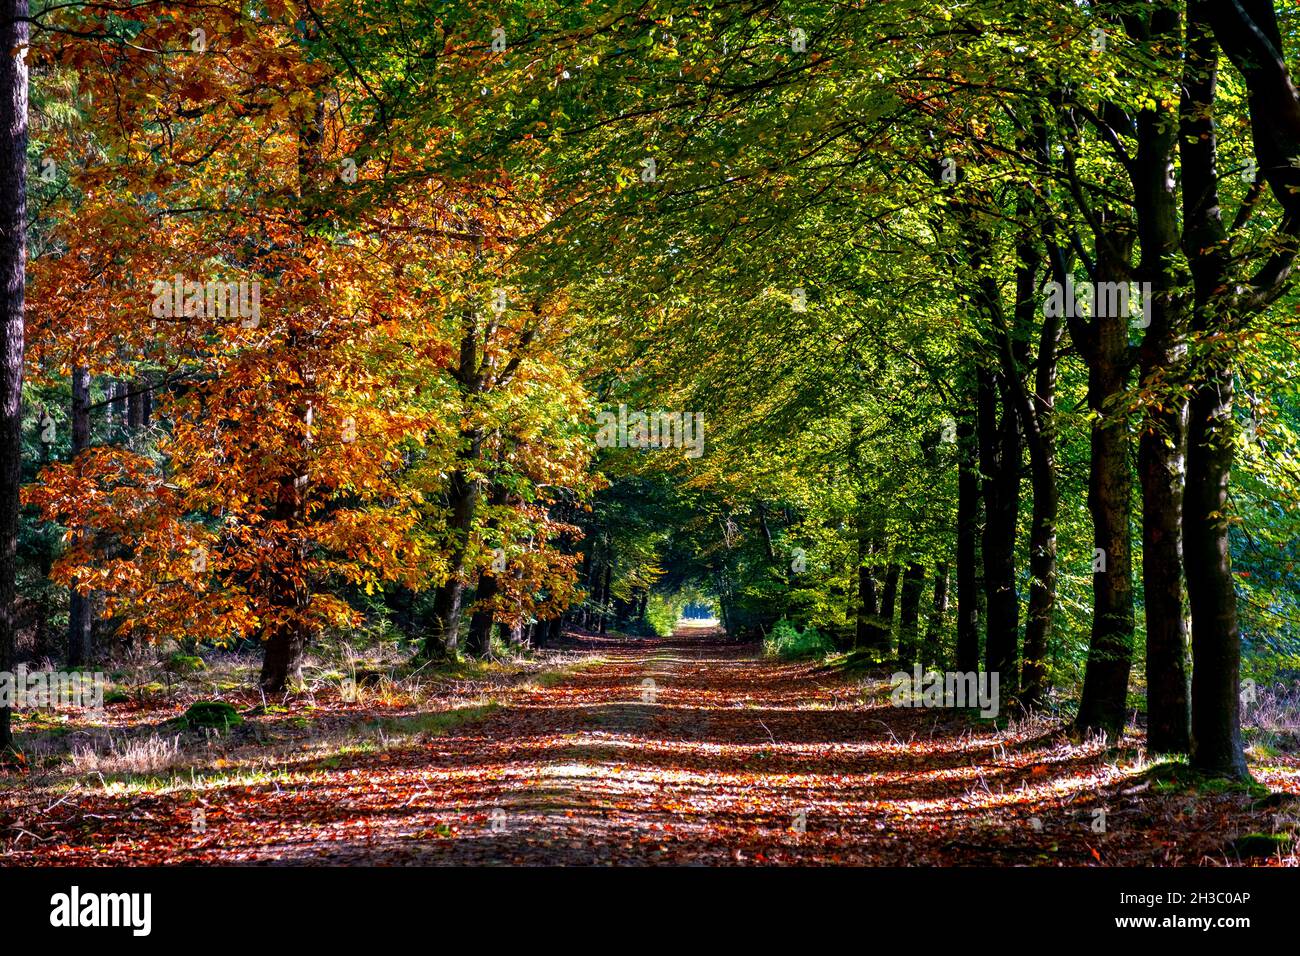 Herbstfarben mit orange roten Bäumen im Oktober im Nationalpark Drentsche AA, bunte Herbstbäume in den Niederlanden Drenthe während der Herbstsaison. Stockfoto